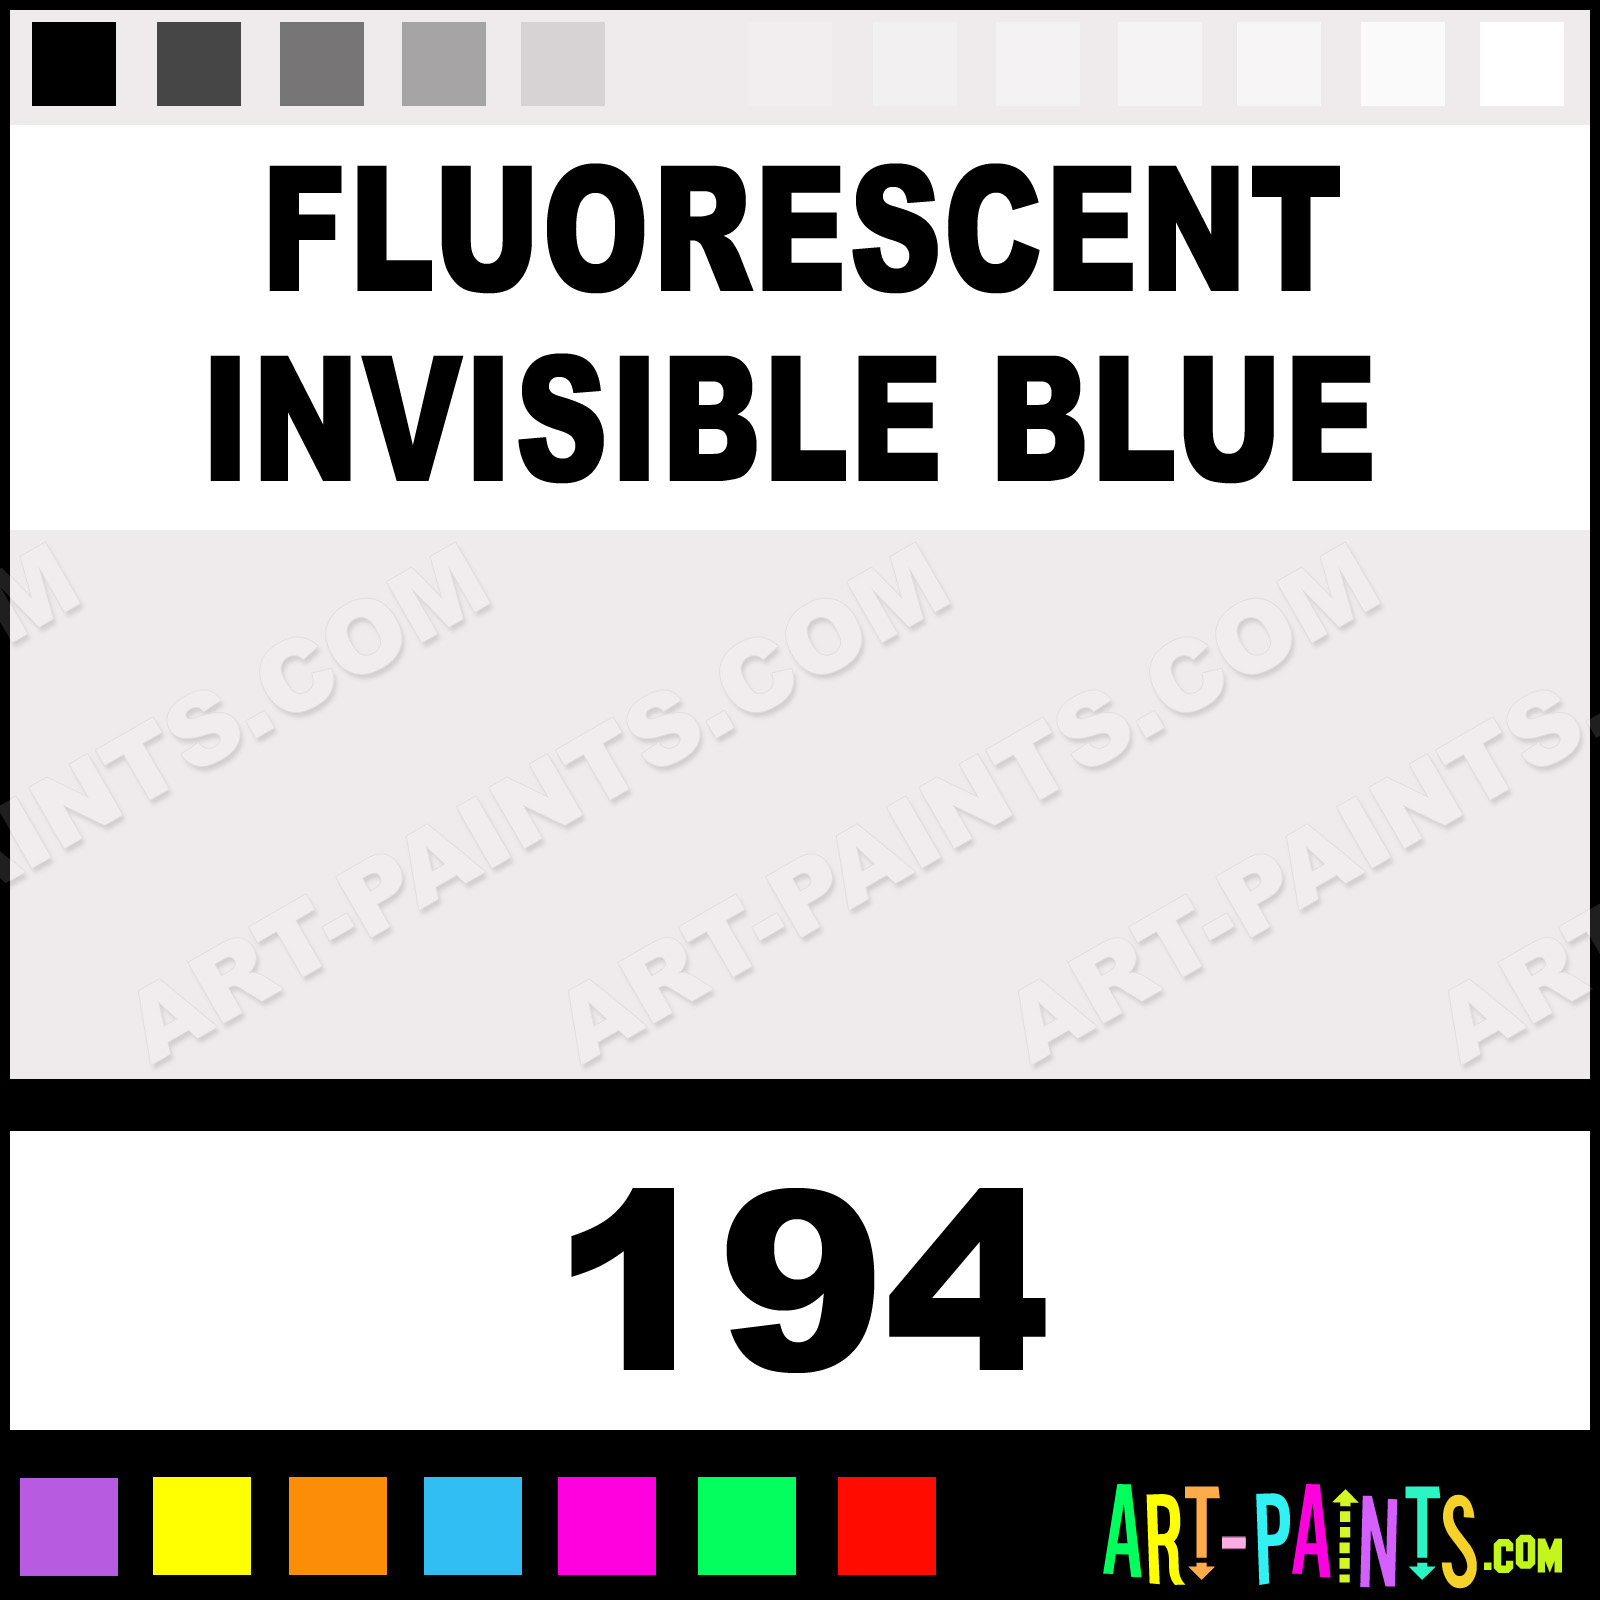 http://www.art-paints.com/Paints/Acrylic/Nova/Fluorescent-Invisible-Blue/Fluorescent-Invisible-Blue-xlg.jpg